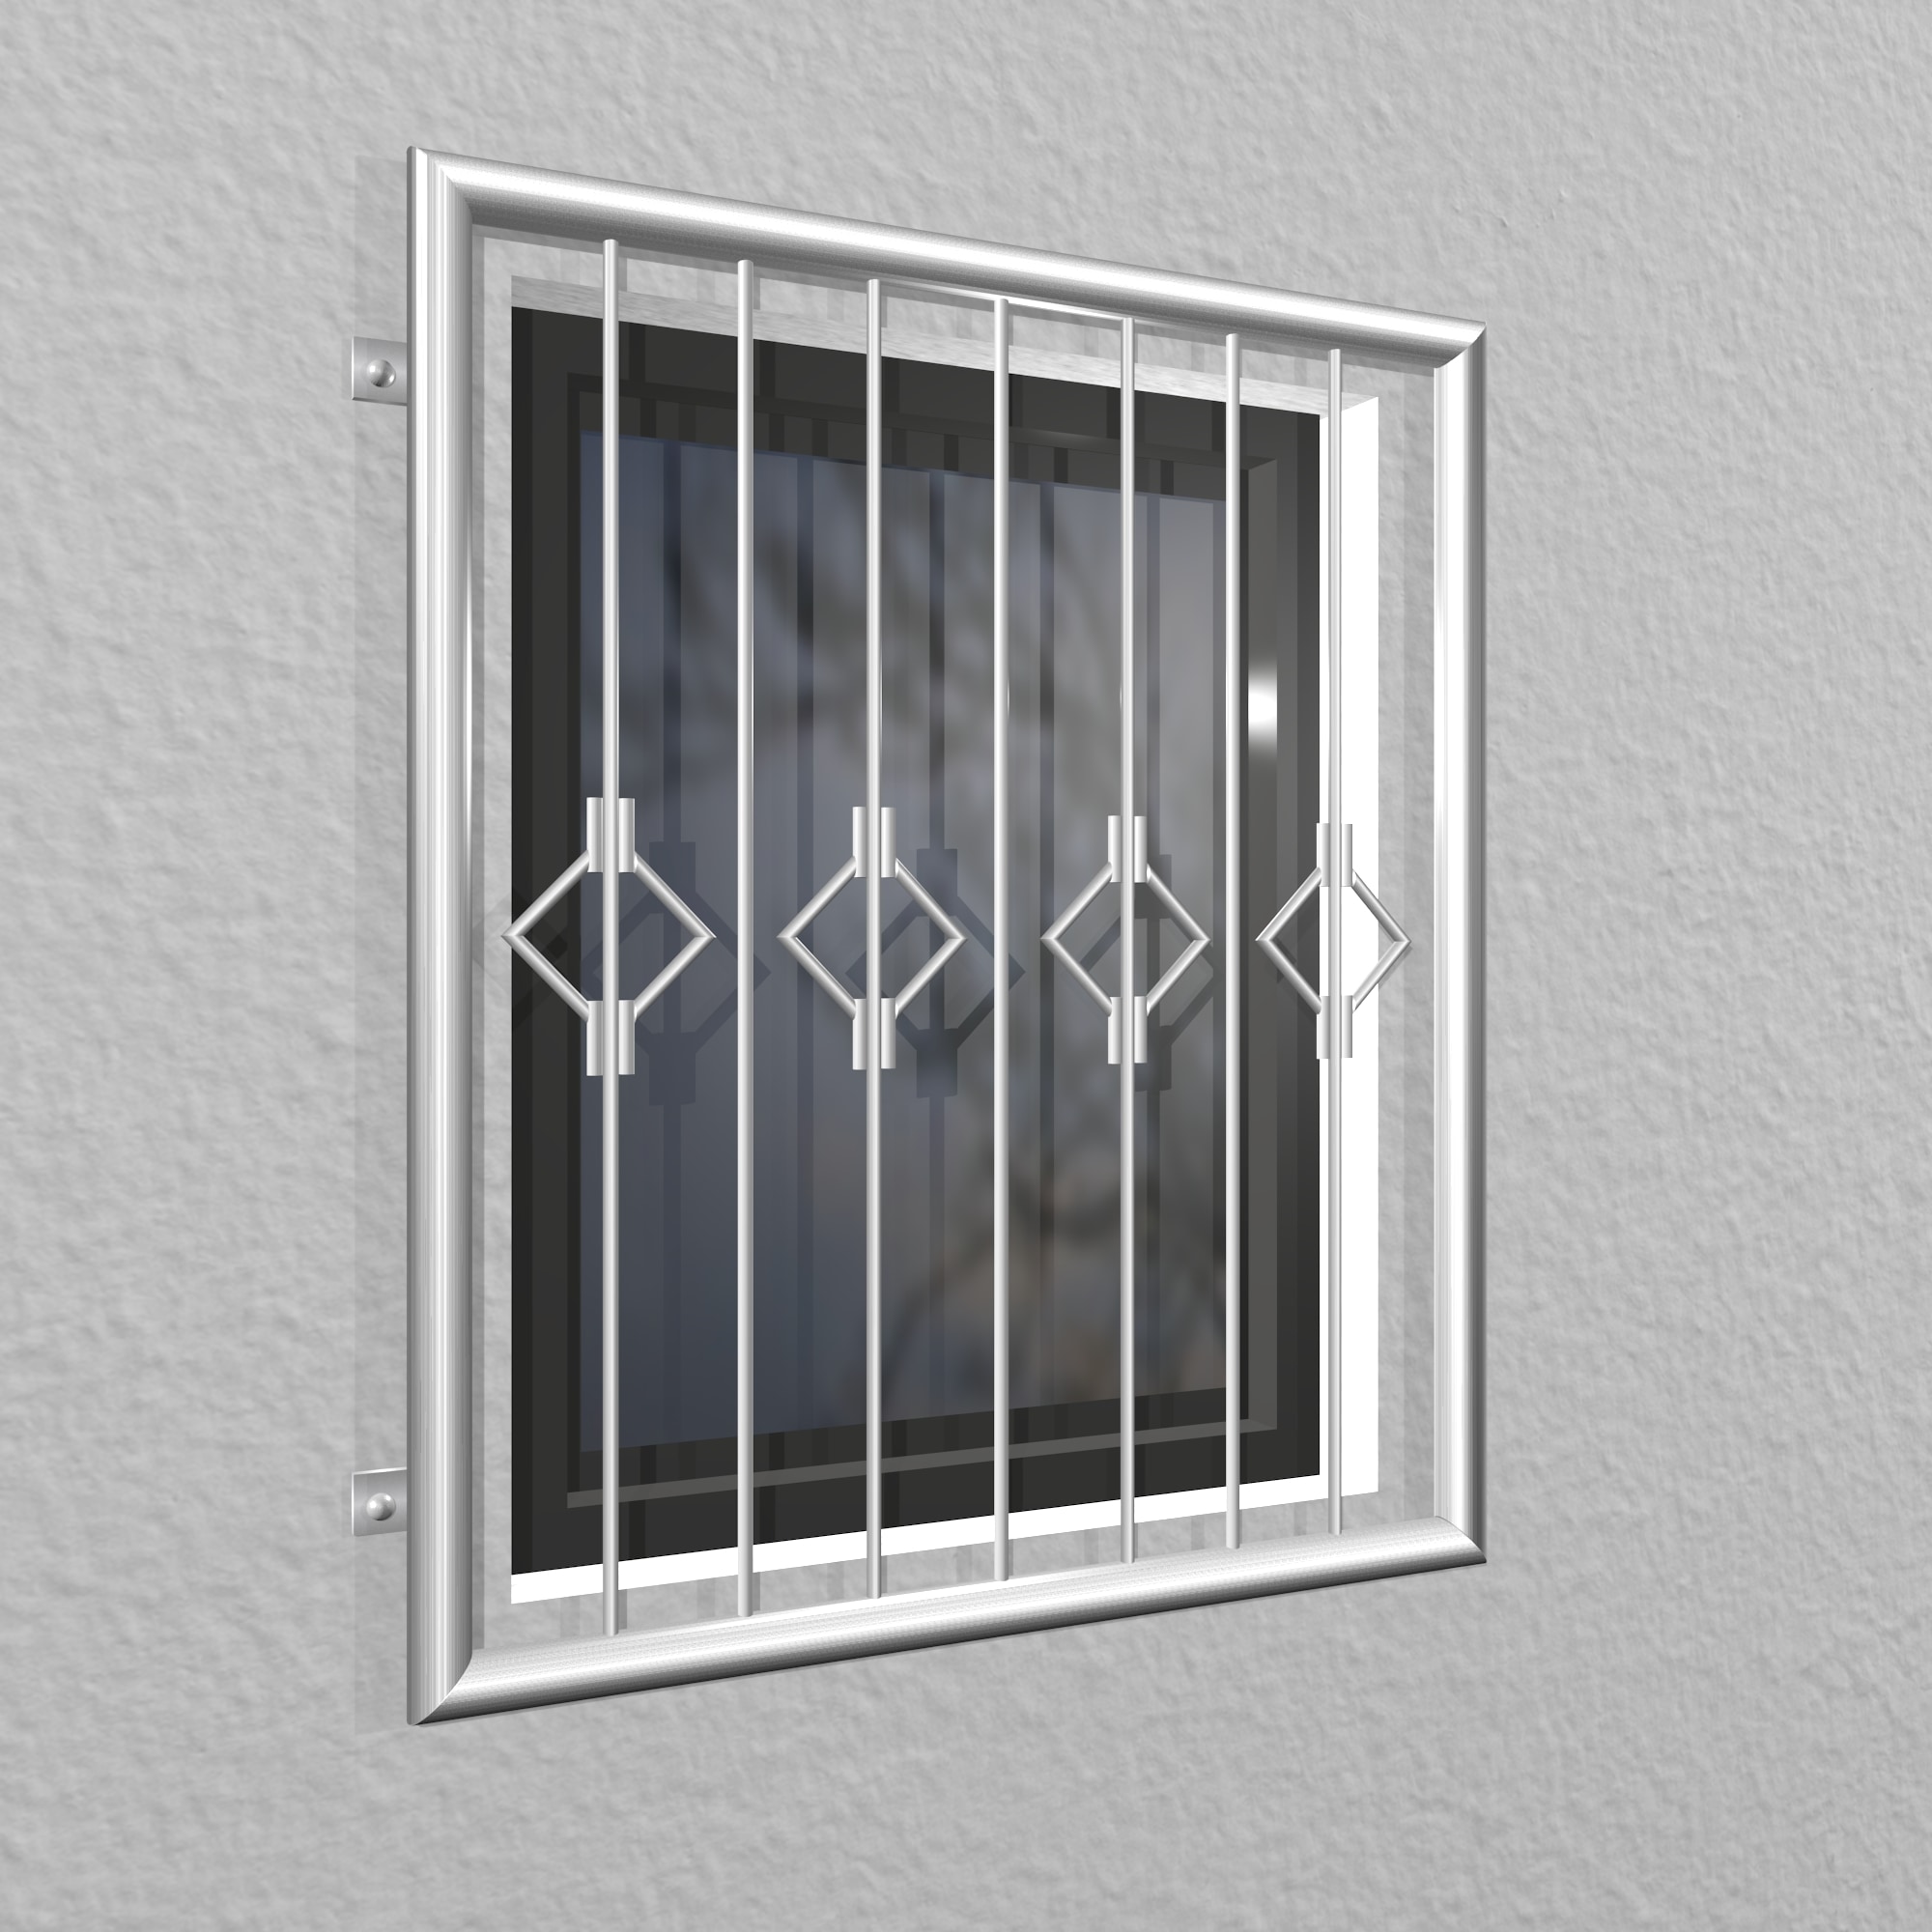 Grille de défense pour fenêtres en acier inoxydable queue